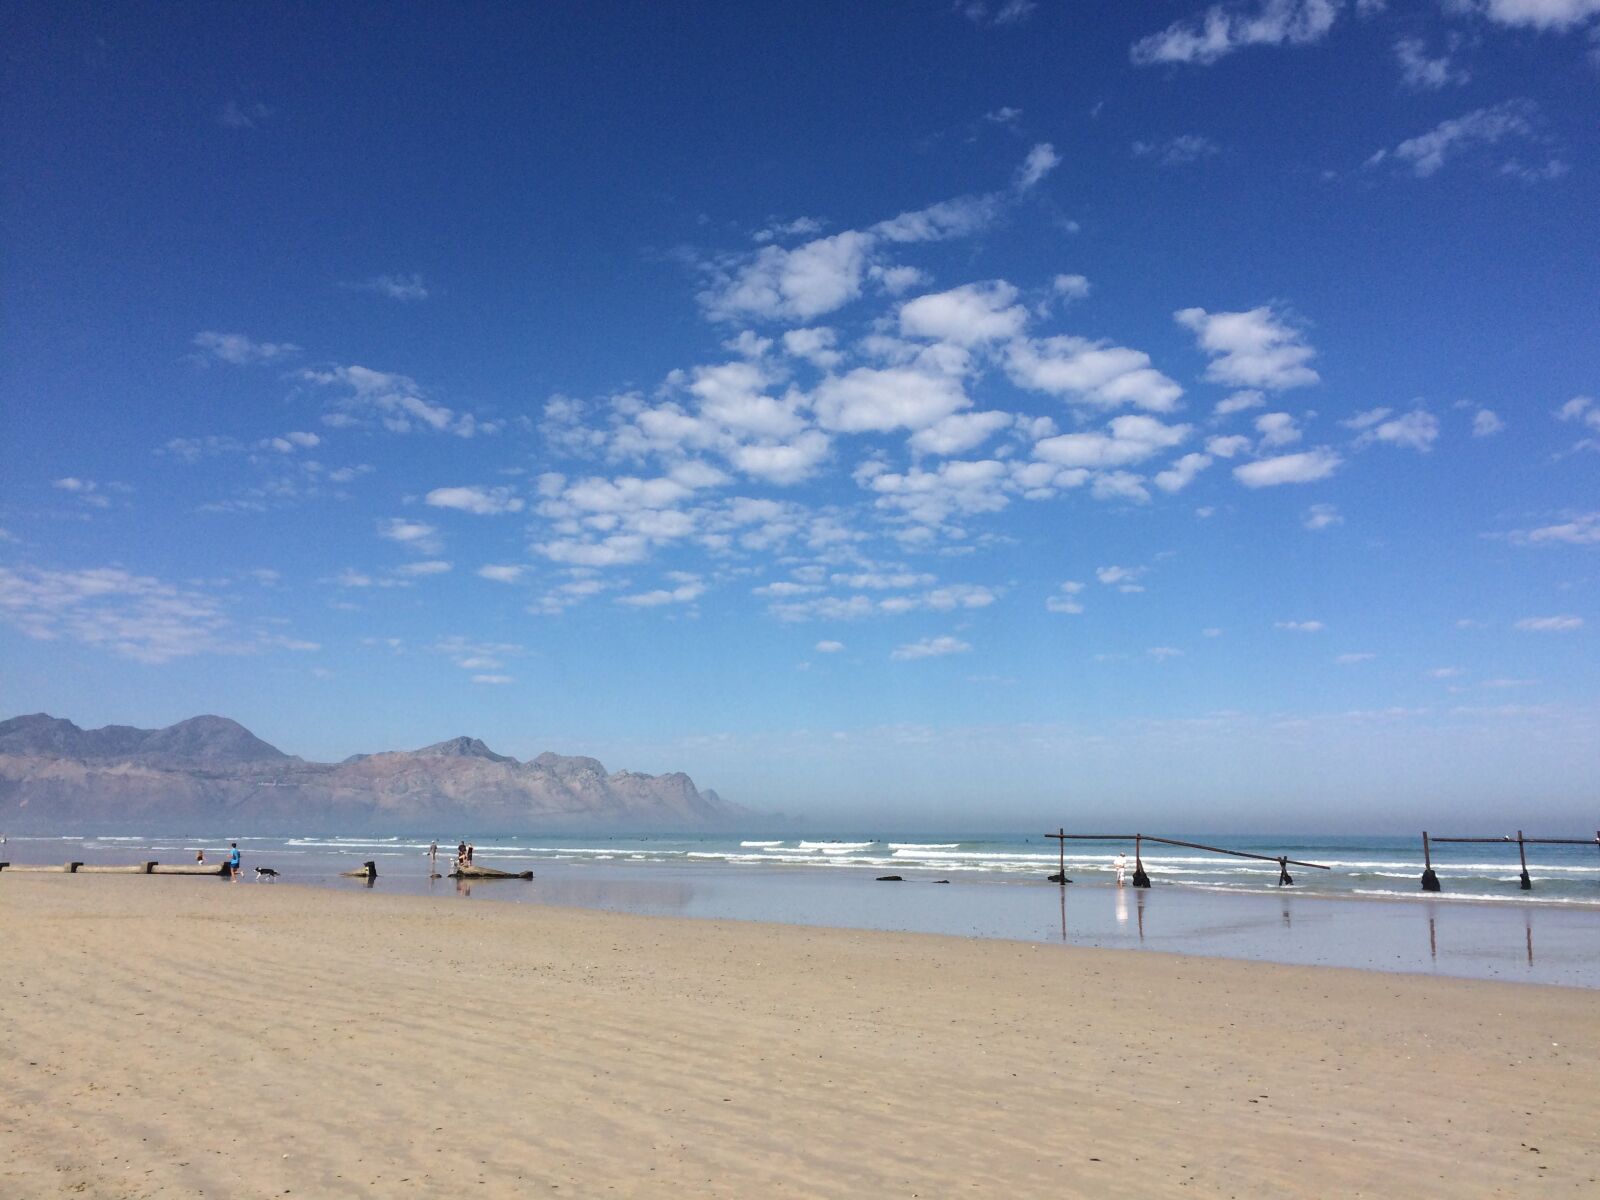 Apple iPhone 5s sample photo. Beach, sky, sand photography